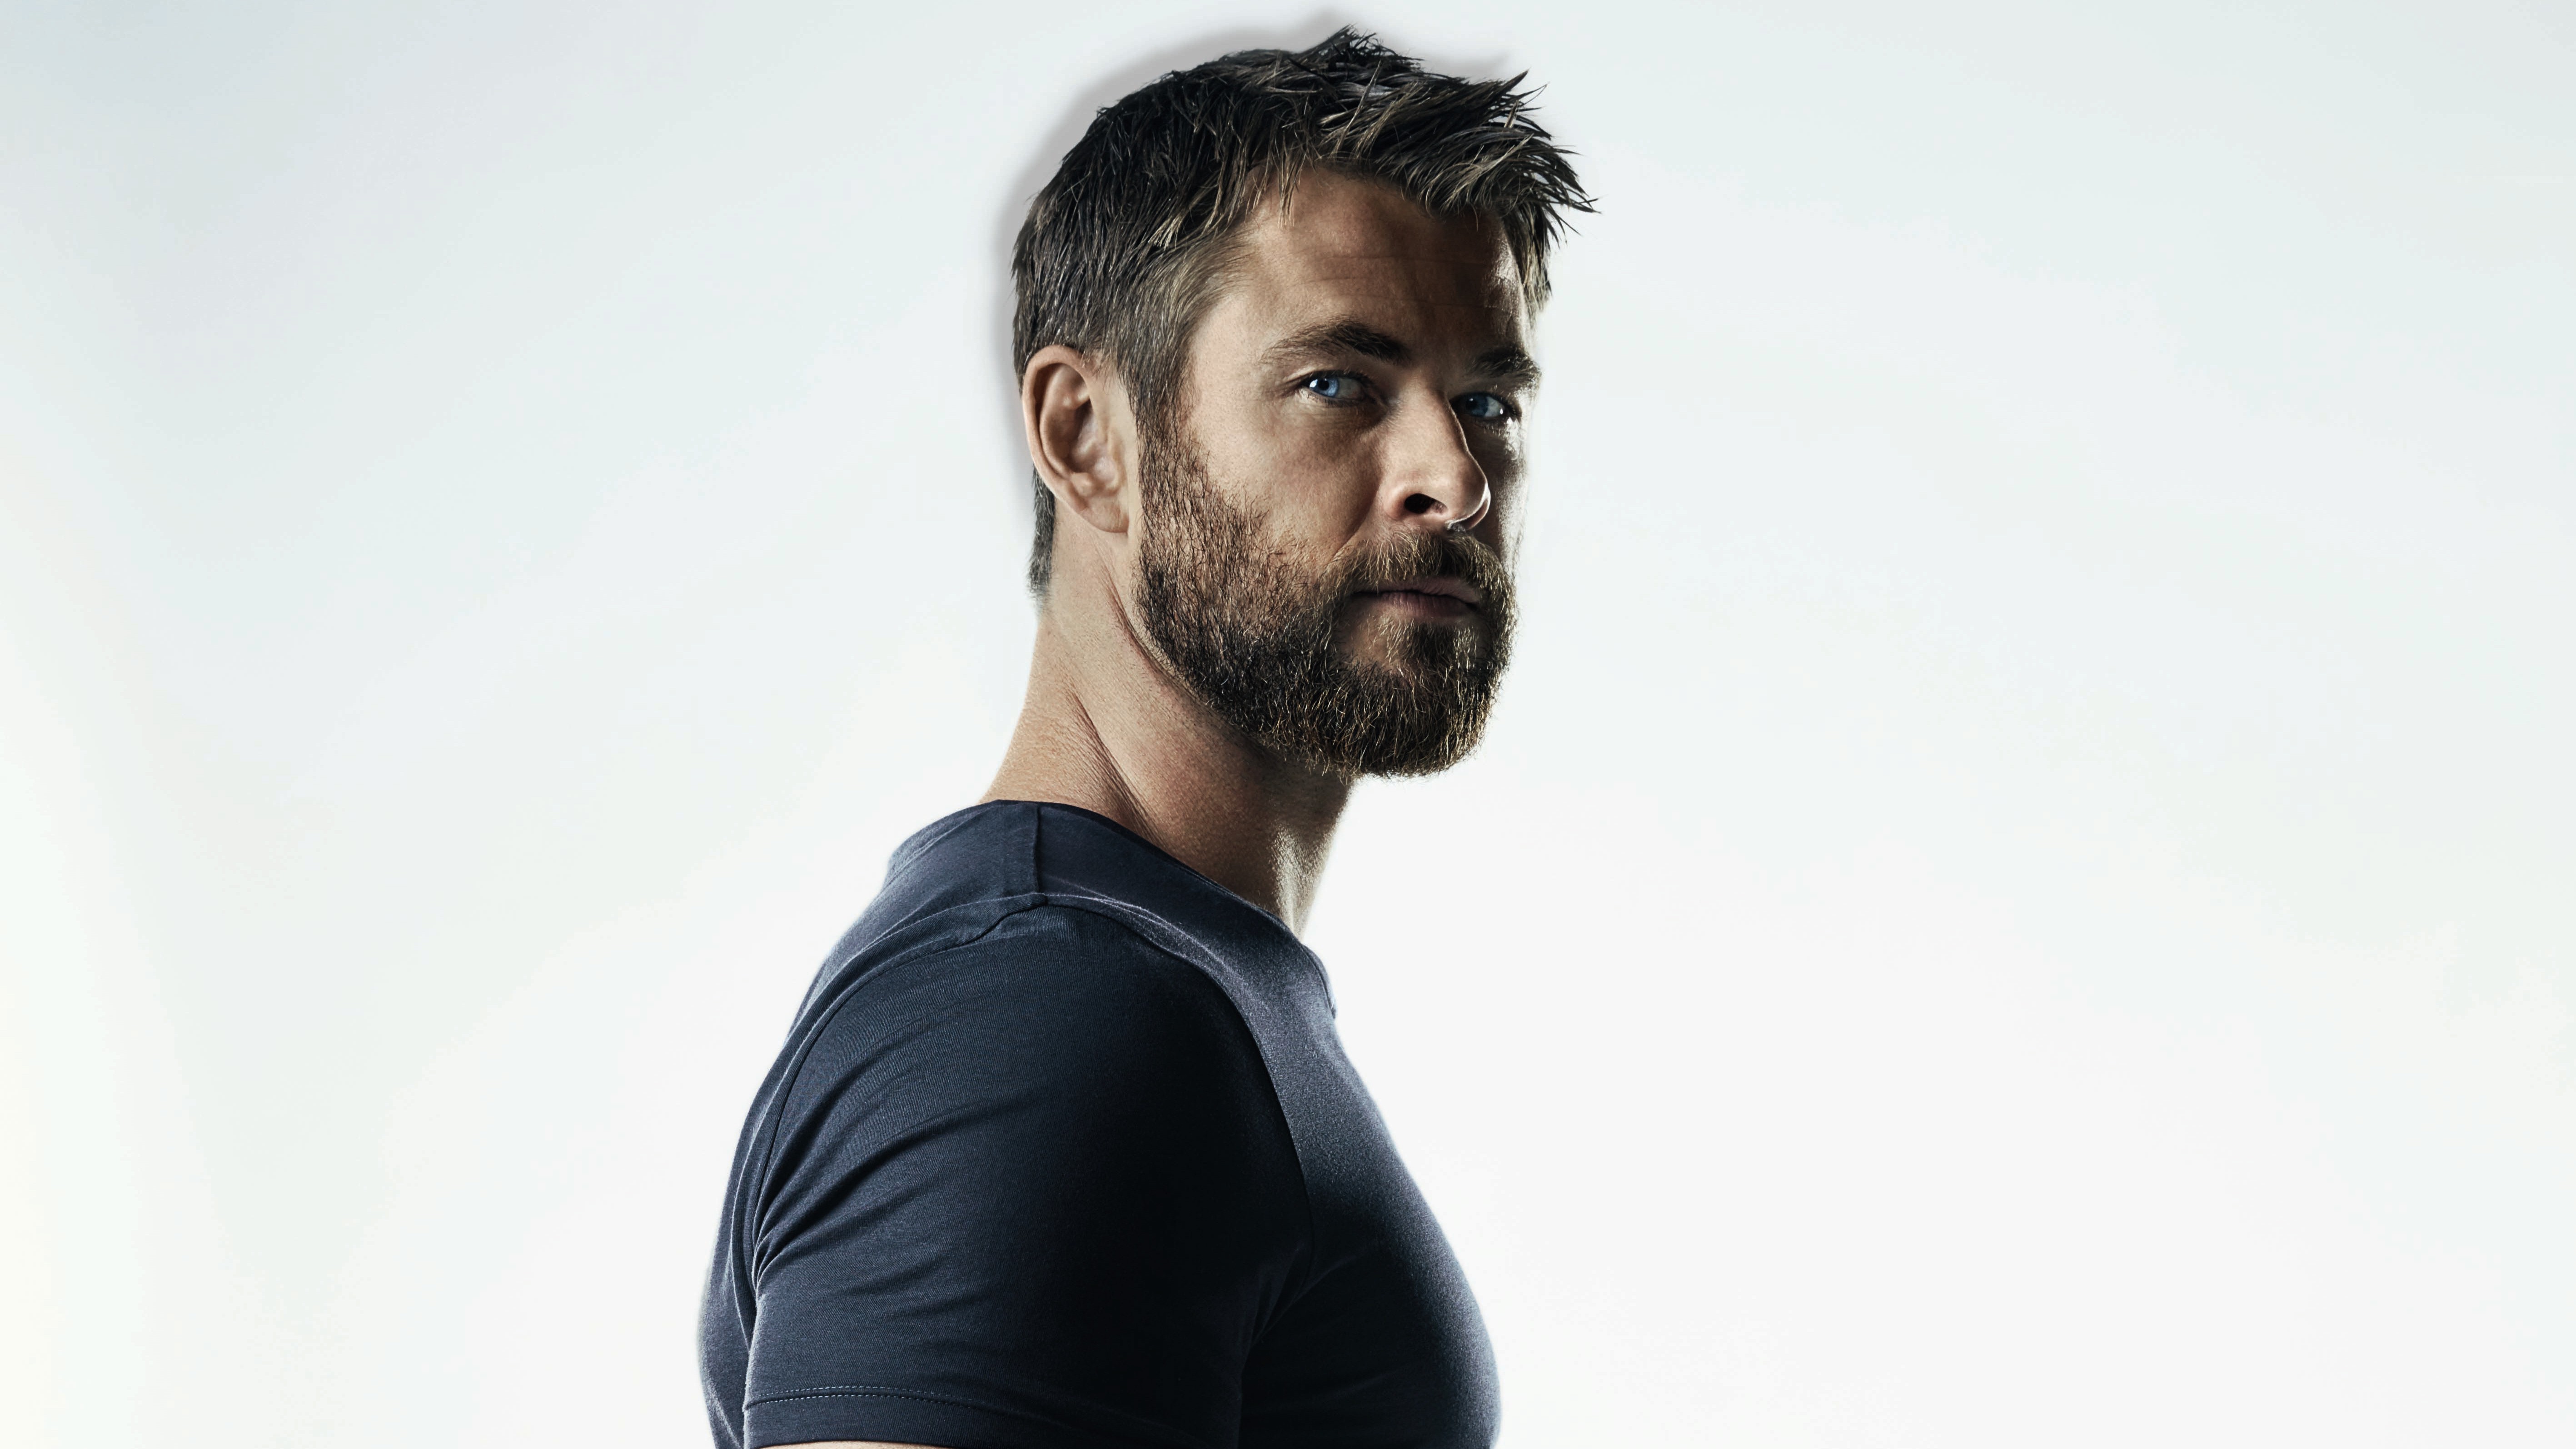 Handsome Actor Chris Hemsworth 5k Wallpaper - Chris Hemsworth - HD Wallpaper 